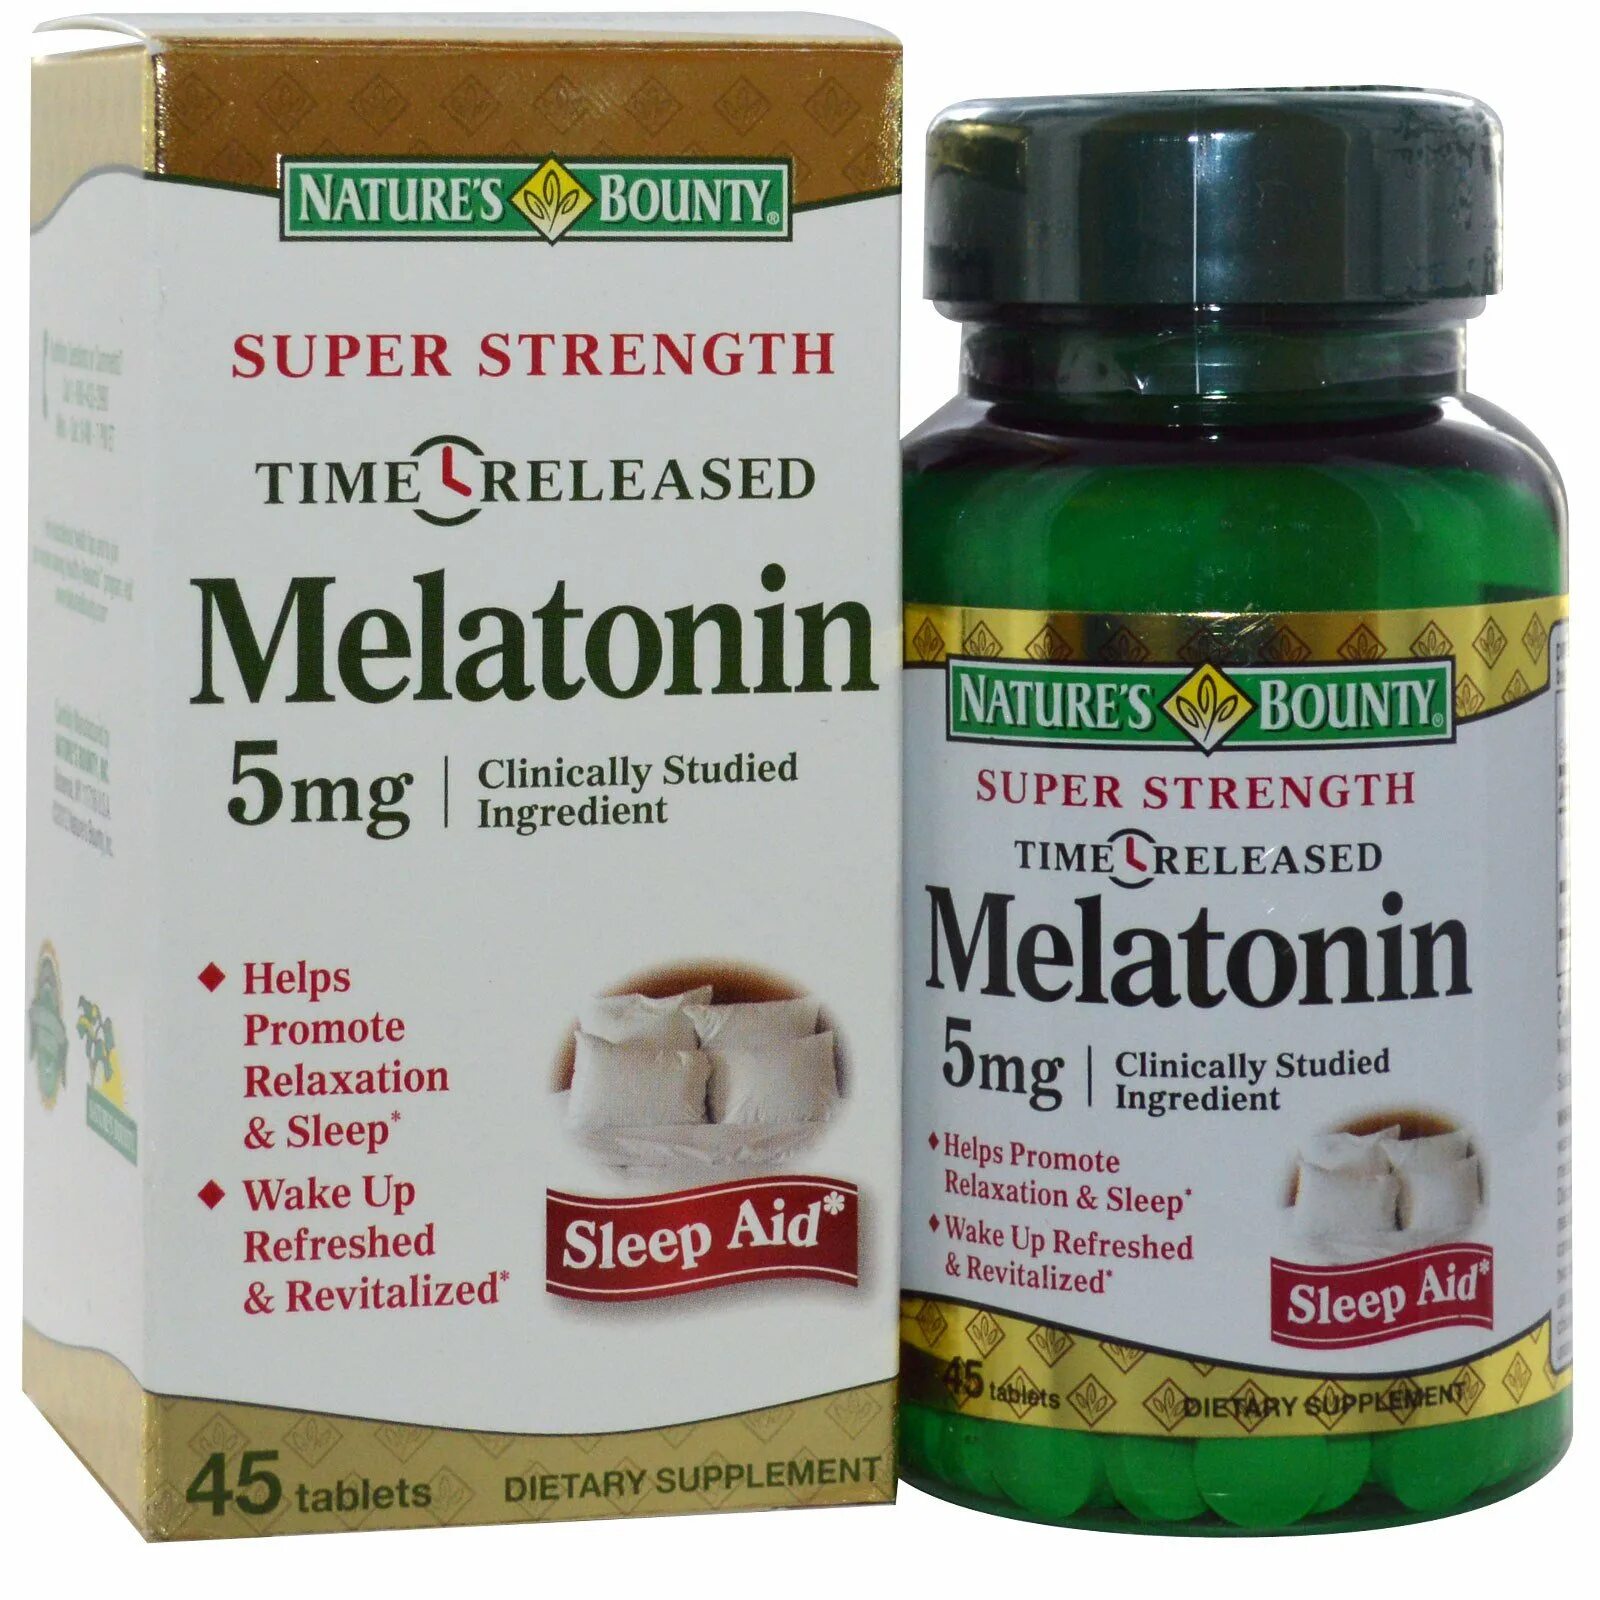 Растительный мелатонин отзывы. Мелатонин натурес Баунти. Мелатонин таблетки natures Bounty. Мелатонин natures Bounty 5 мг. Мелатонин 5 мг IHERB.